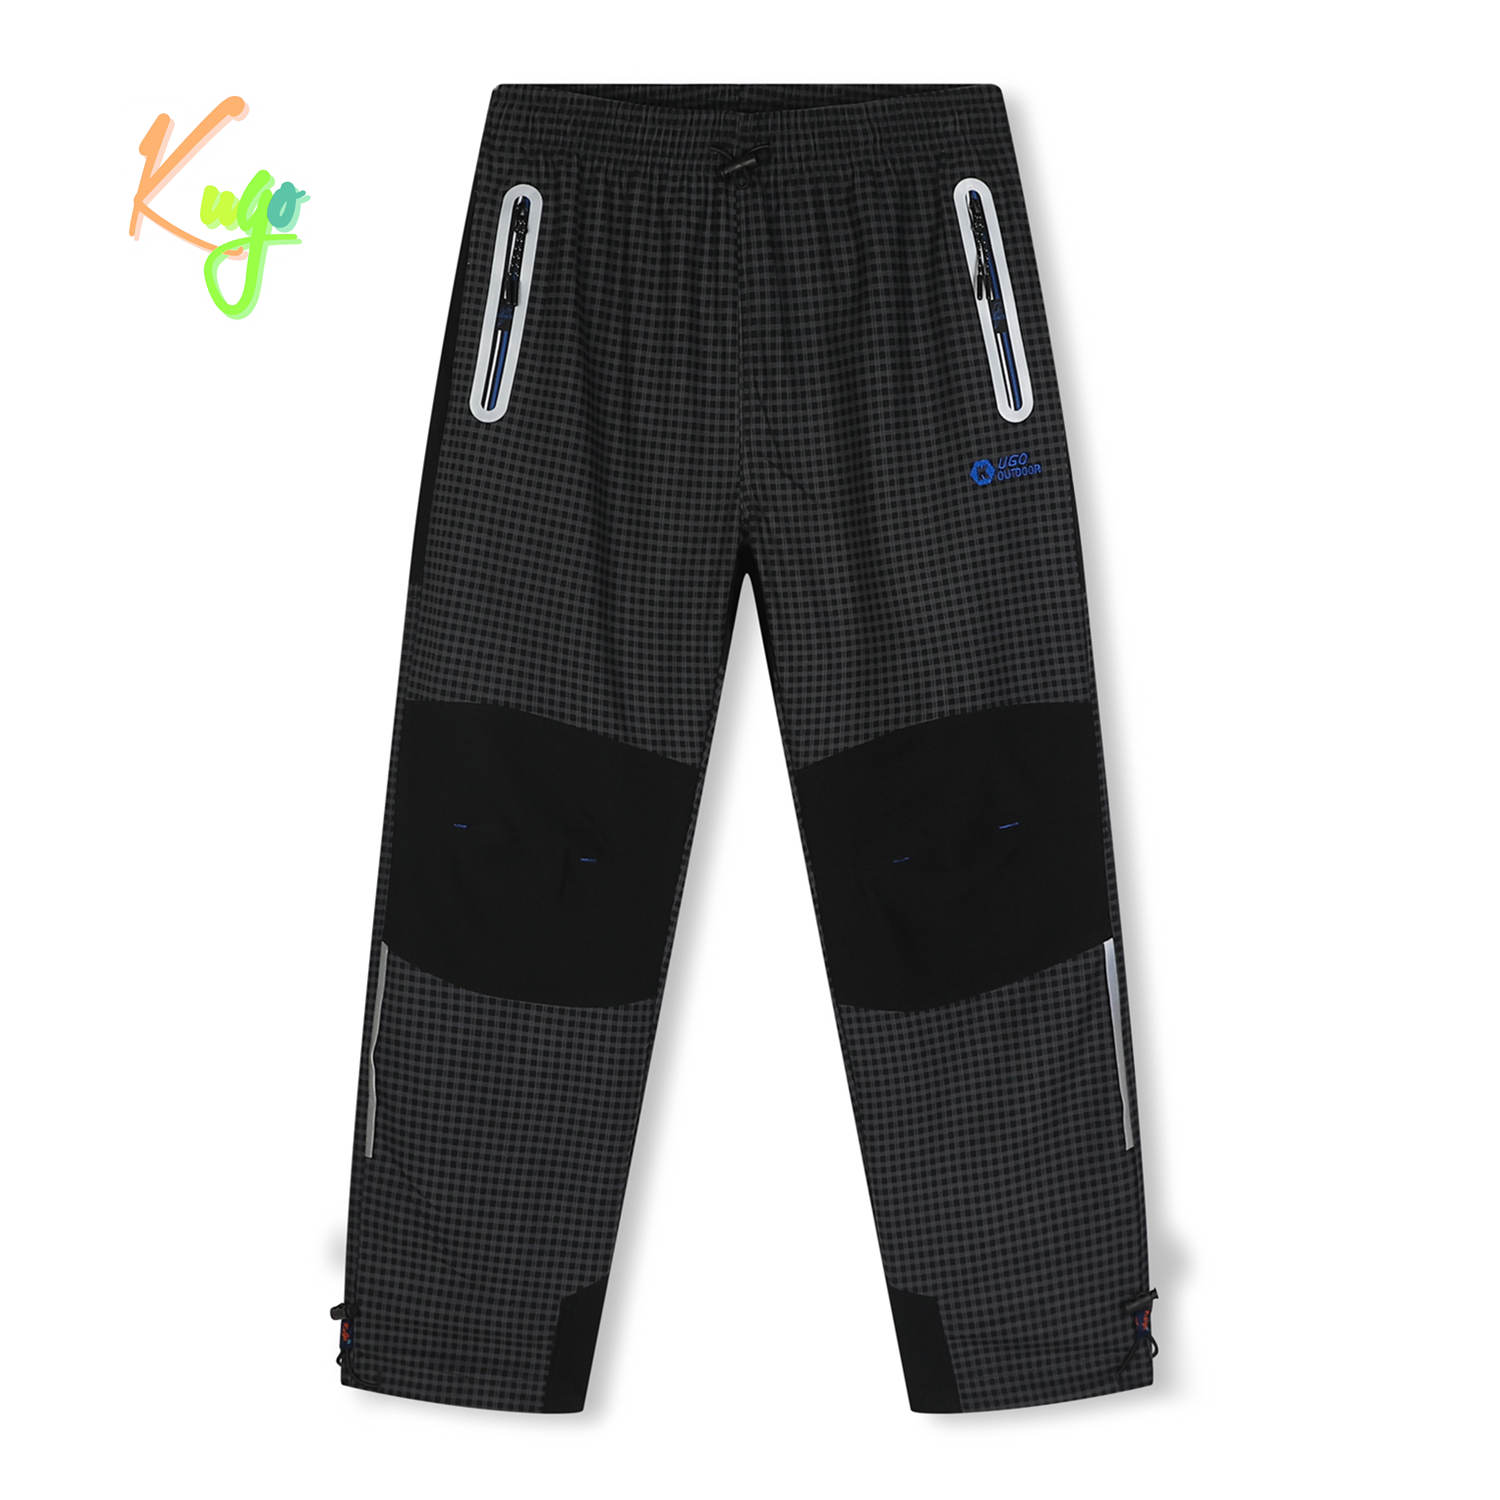 Chlapecké outdoorové kalhoty - KUGO G9658, šedá / modré zipy Barva: Šedá, Velikost: 152